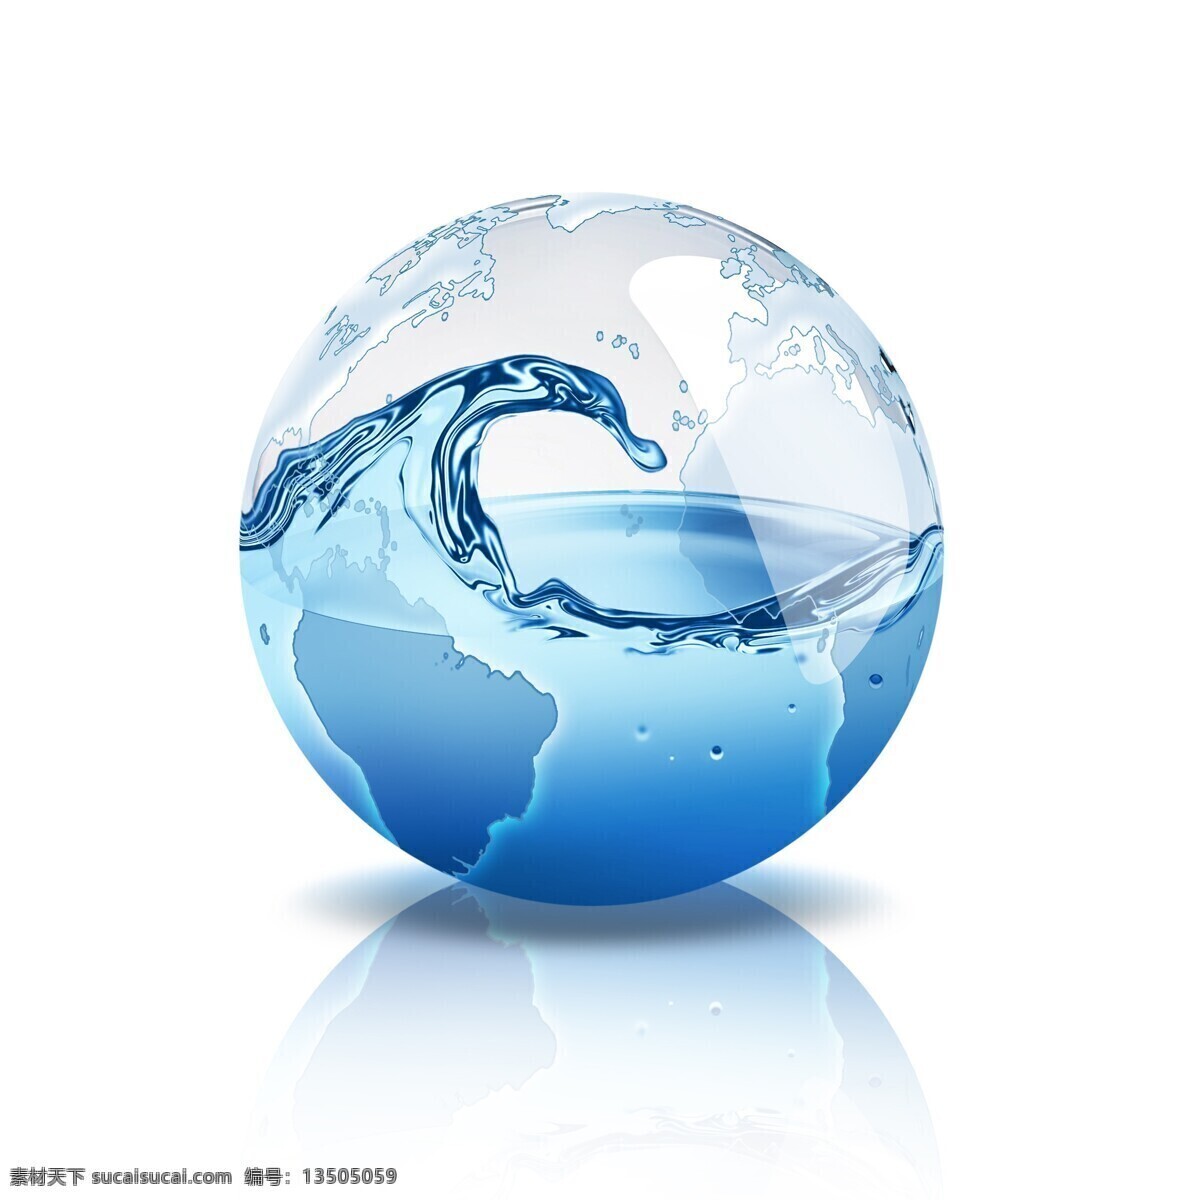 创意 水球 水浪 水 水纹 水波 水花 水背景 水主题 水元素 冰水烈火 创意水球 水图片 生活百科